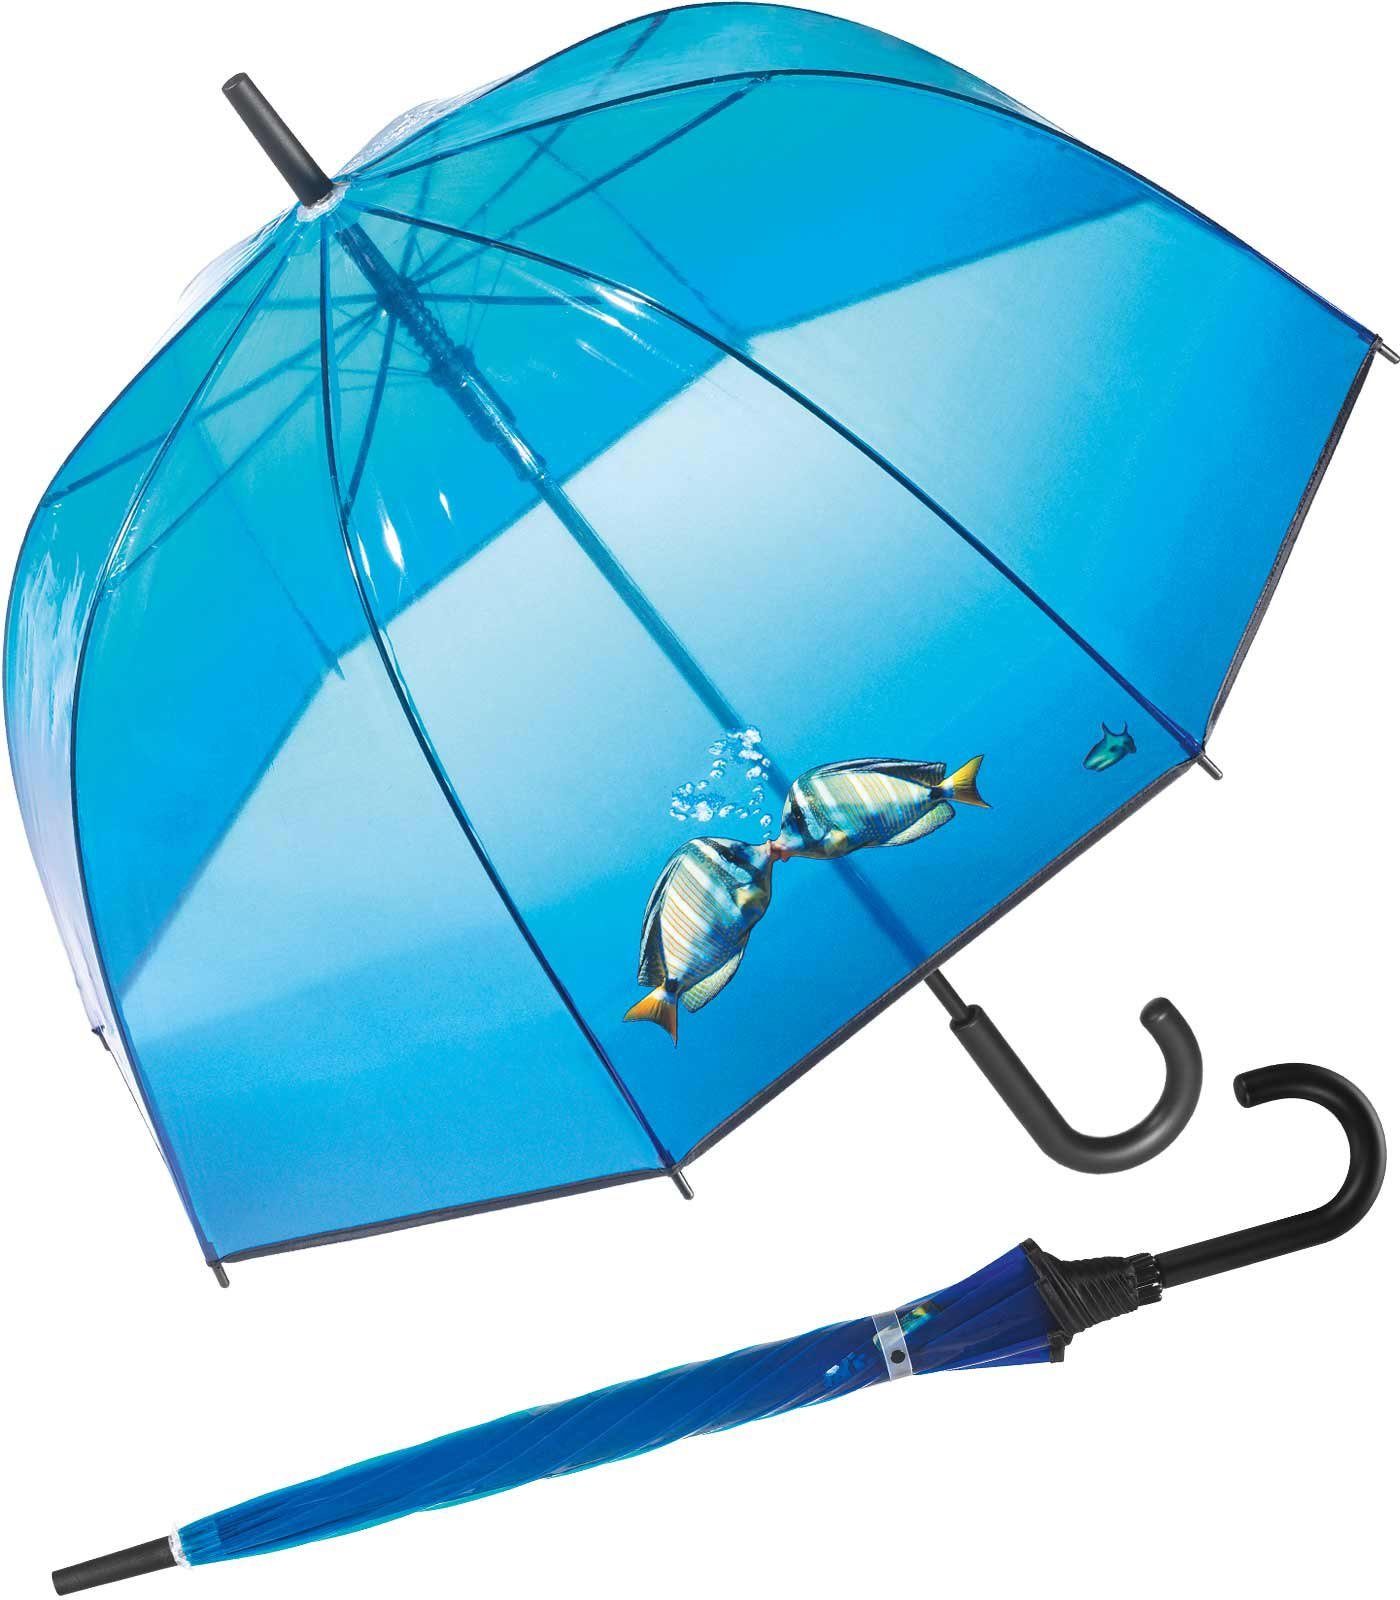 mit RAIN Fischen großer, Glockenschirm transparenter fishes kissing Langregenschirm blau - durchsichtig für Damen, HAPPY